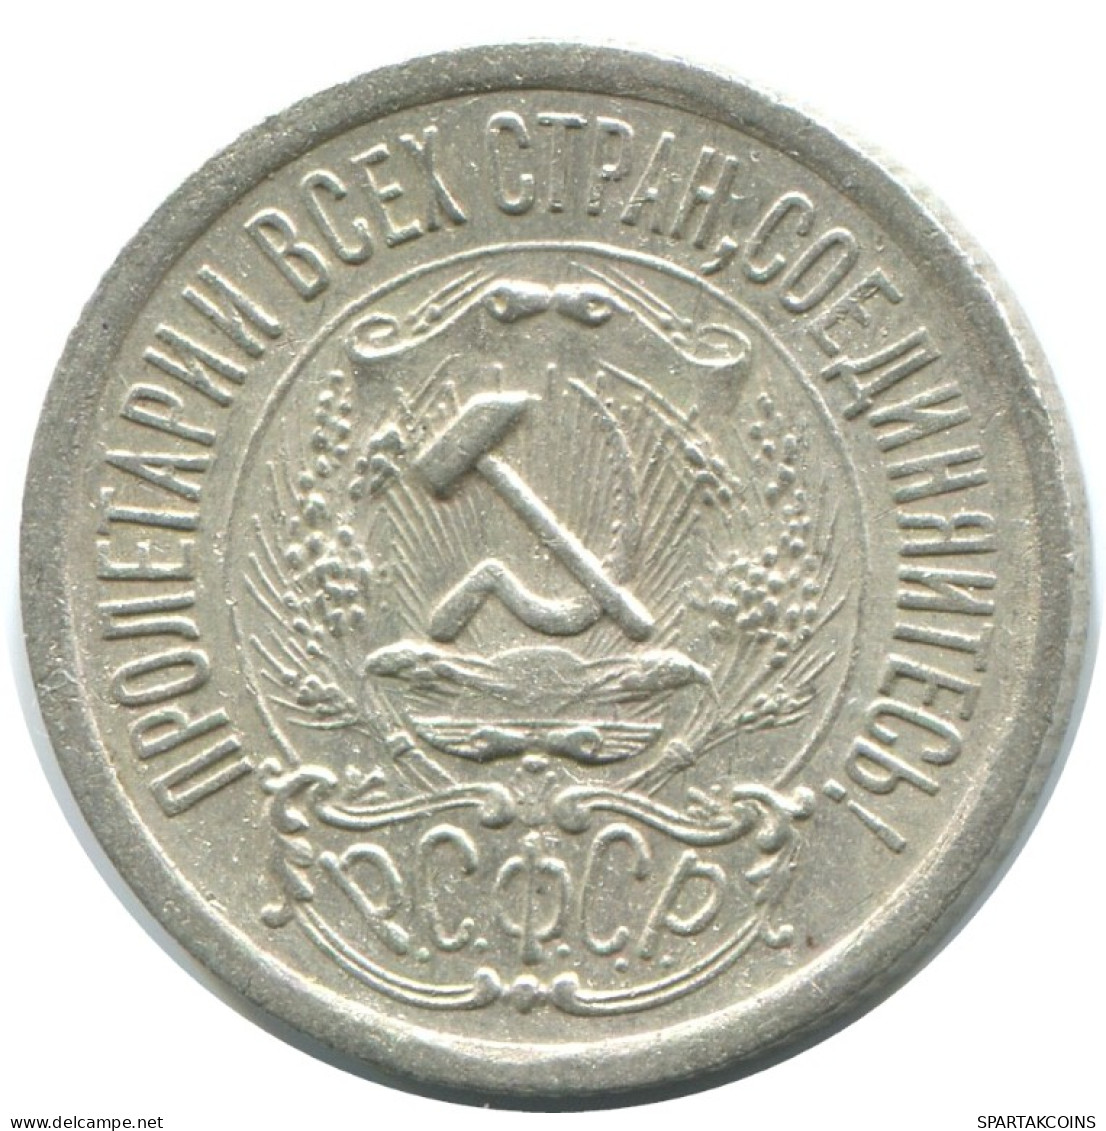 15 KOPEKS 1923 RUSIA RUSSIA RSFSR PLATA Moneda HIGH GRADE #AF039.4.E.A - Russland